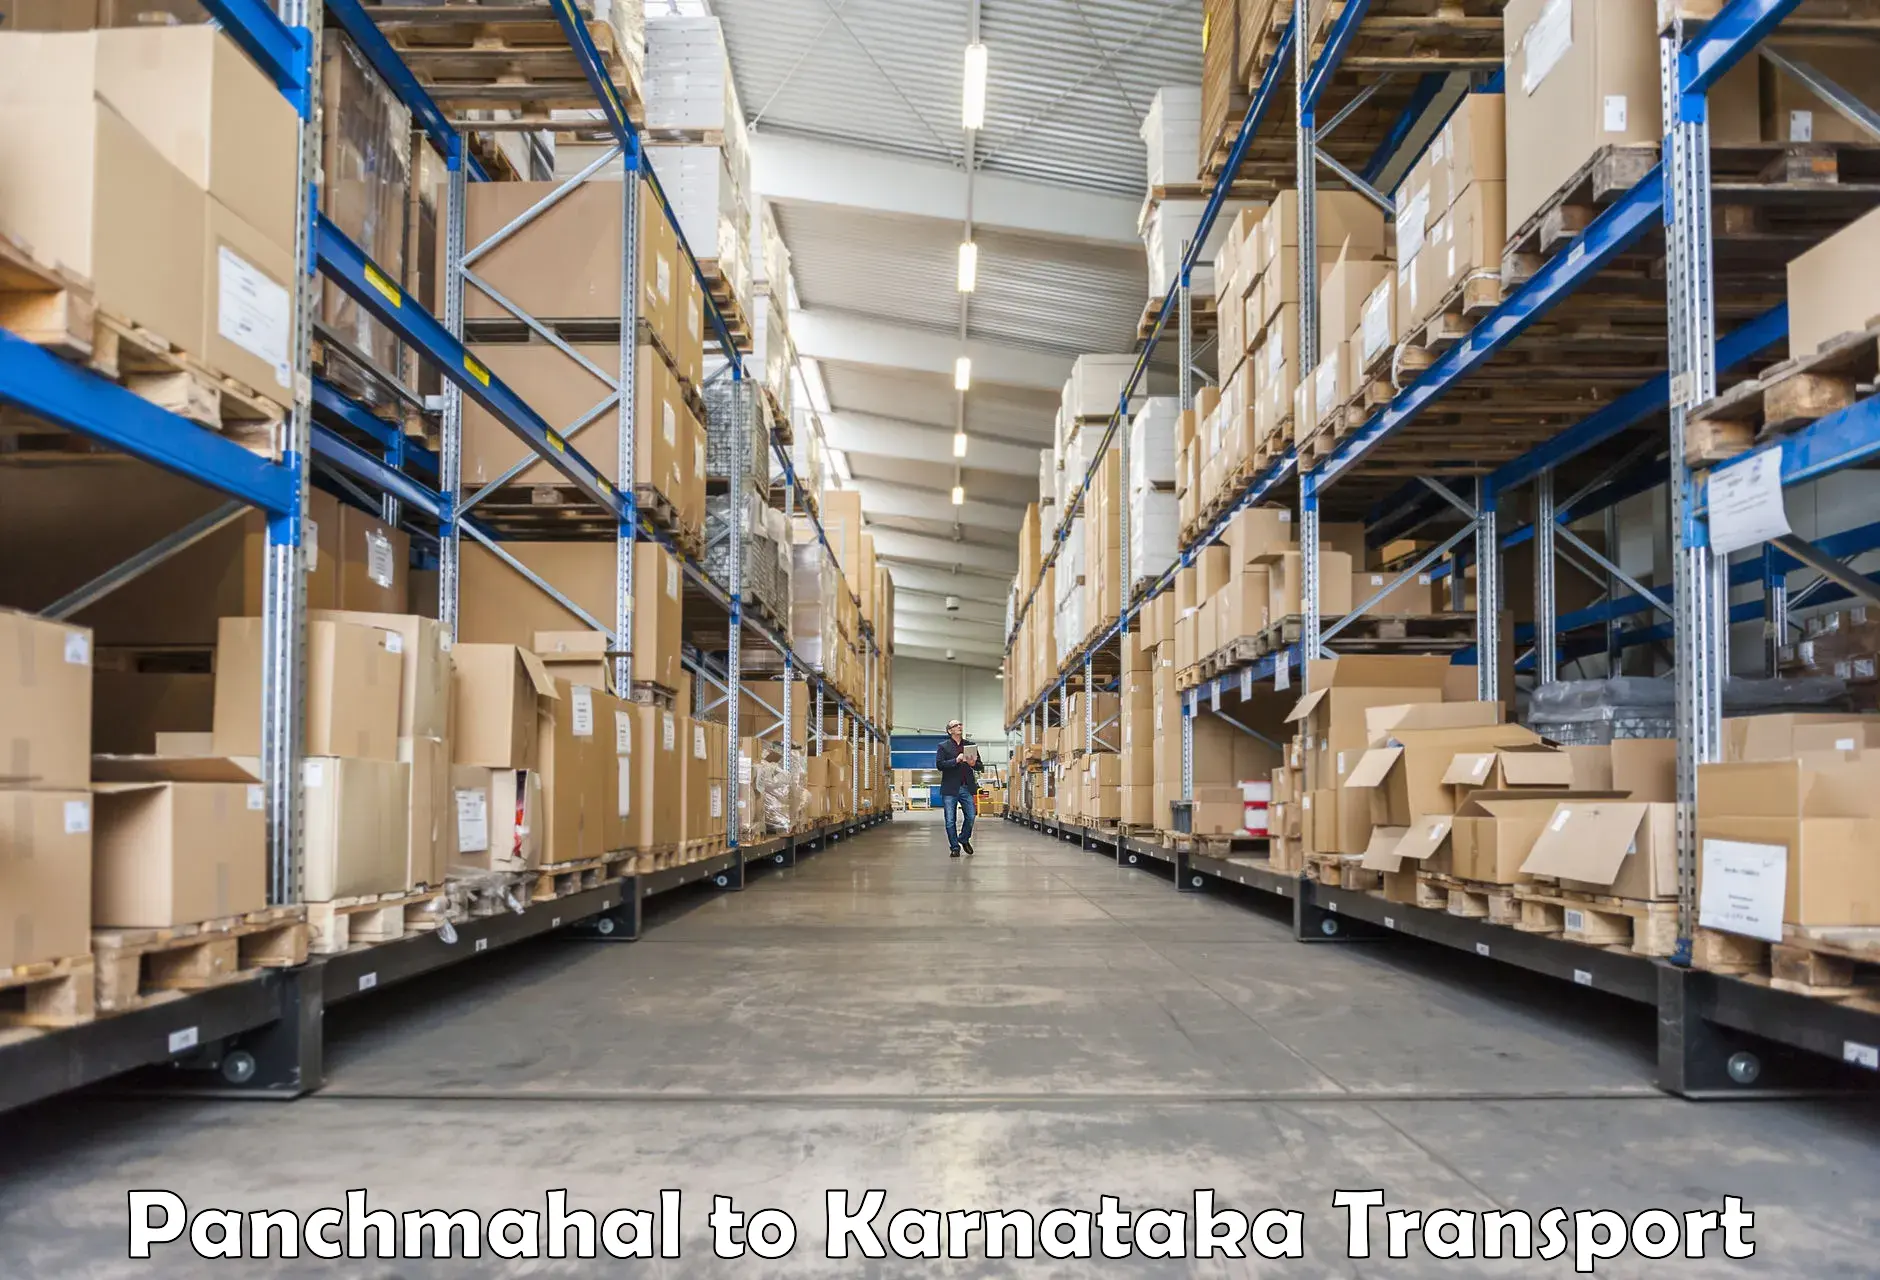 International cargo transportation services Panchmahal to Kalaburagi